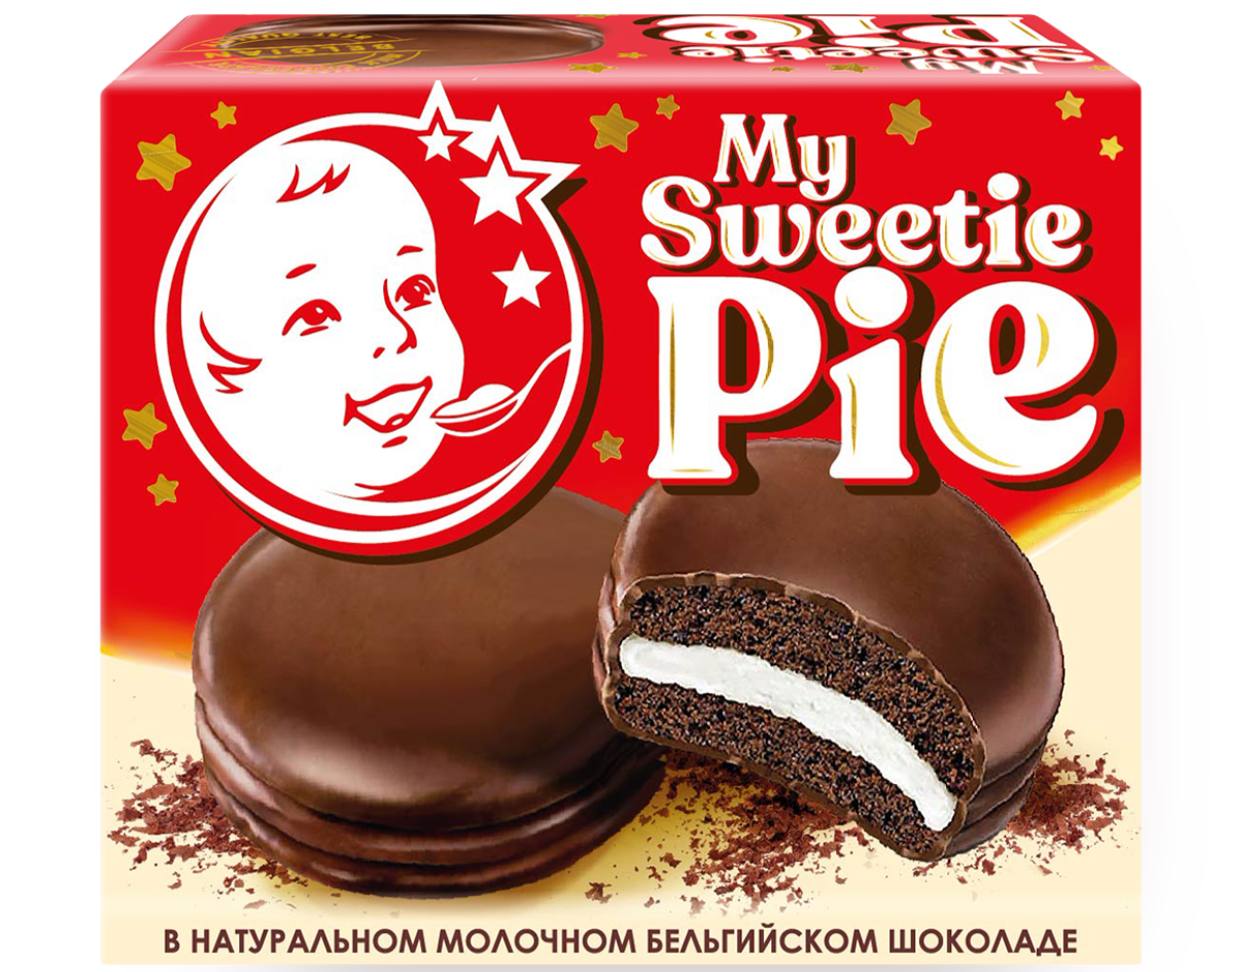 Sweeties_pie